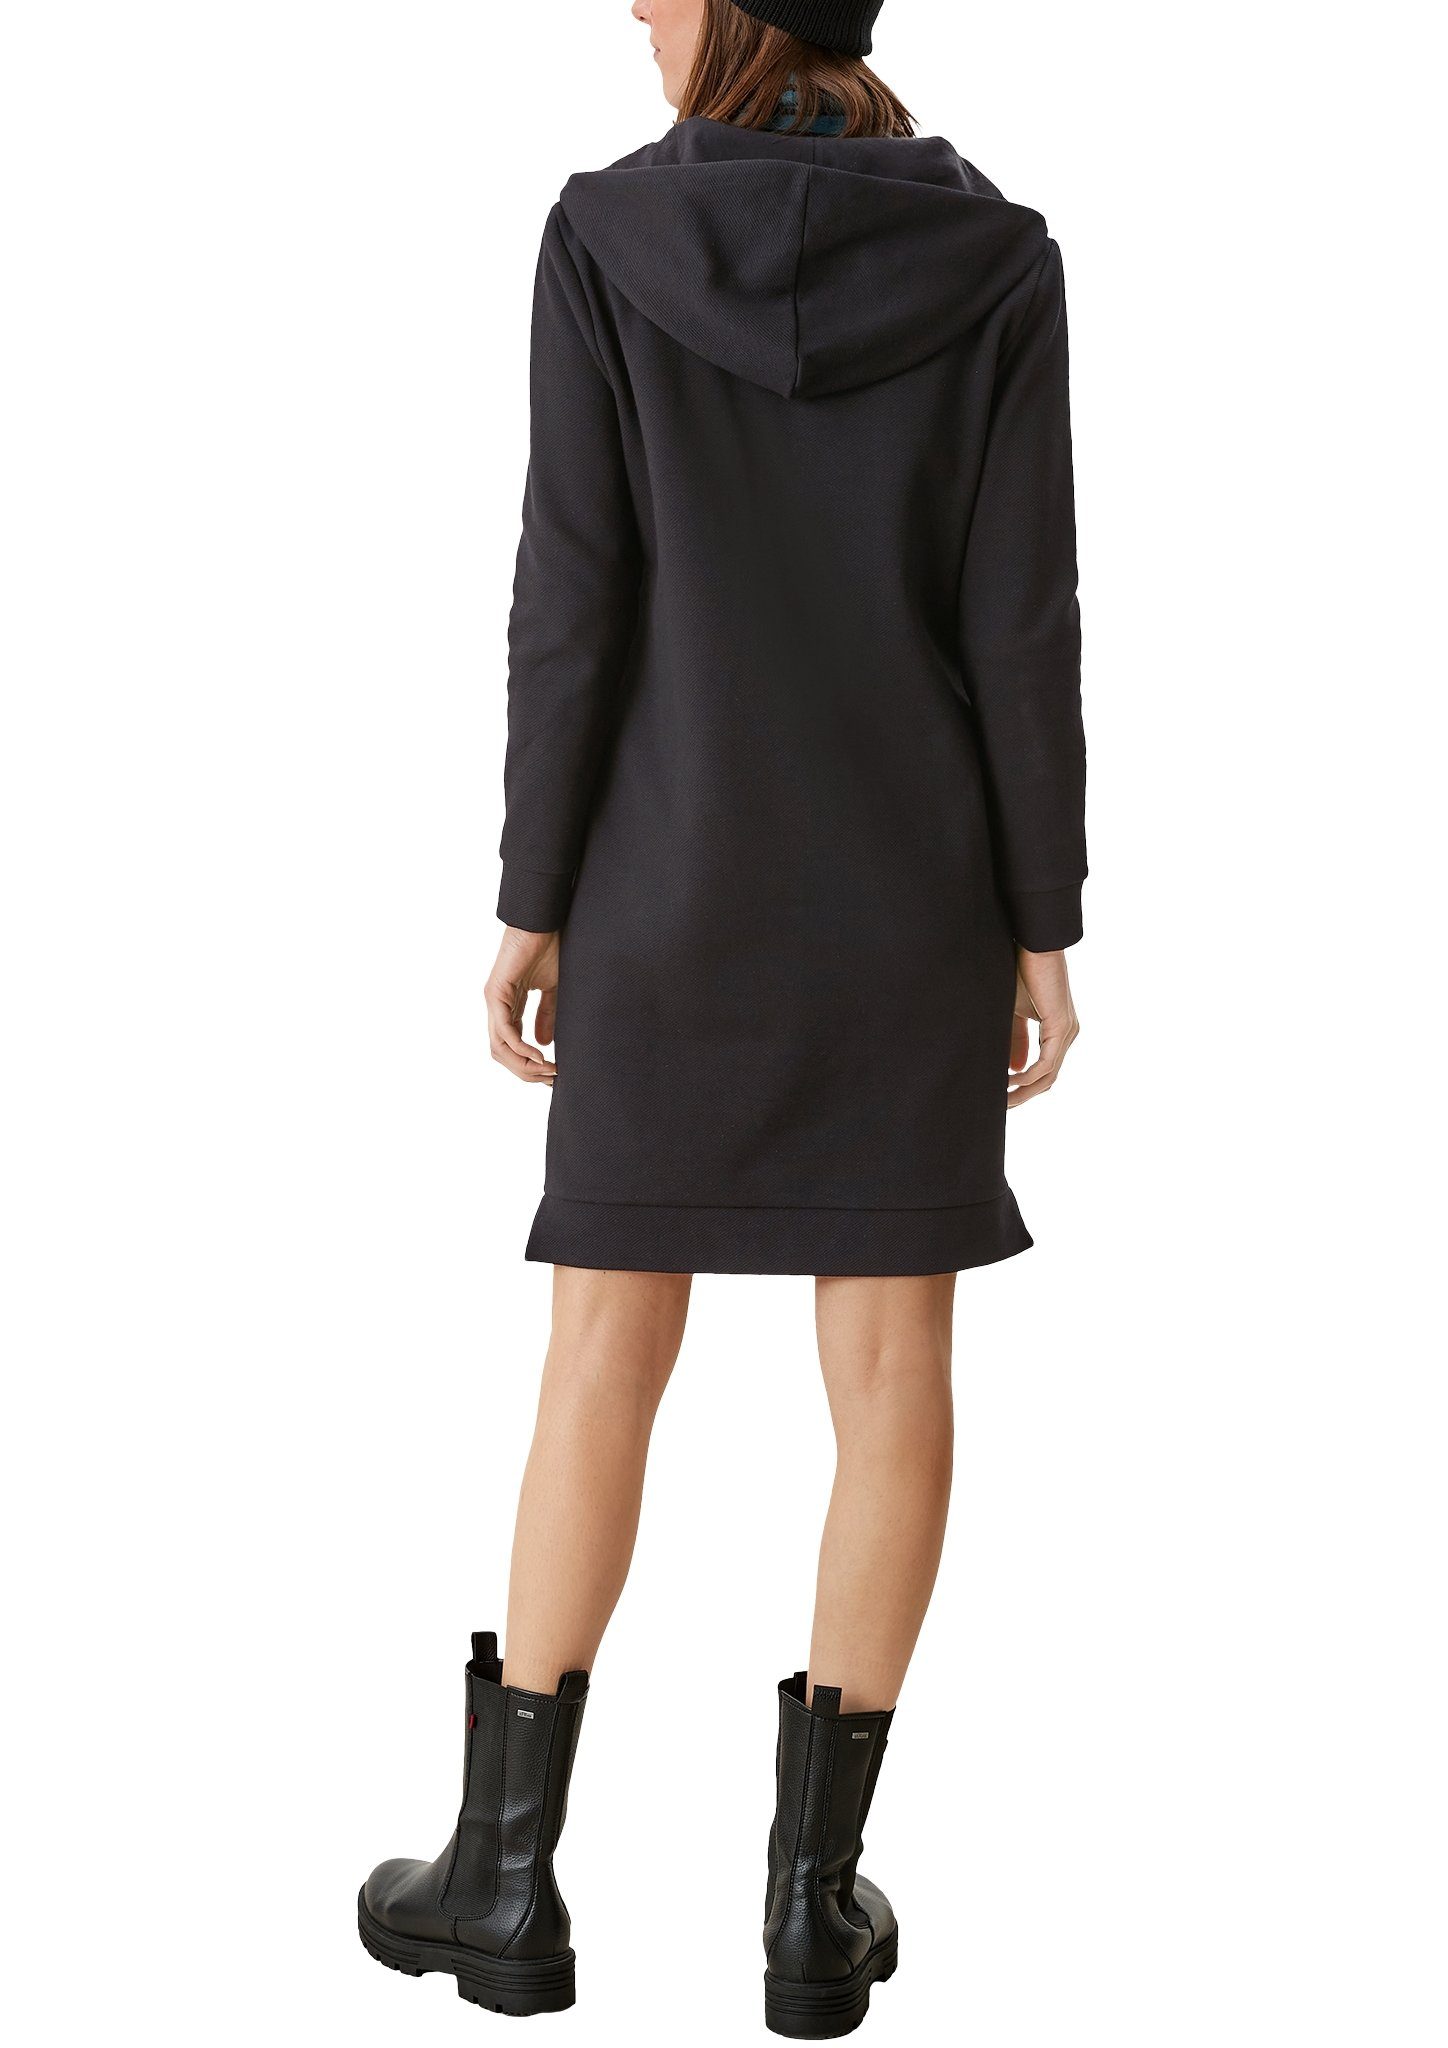 Damen Kleider s.Oliver Minikleid Sweatshirtkleid mit Kapuze Reißverschluss